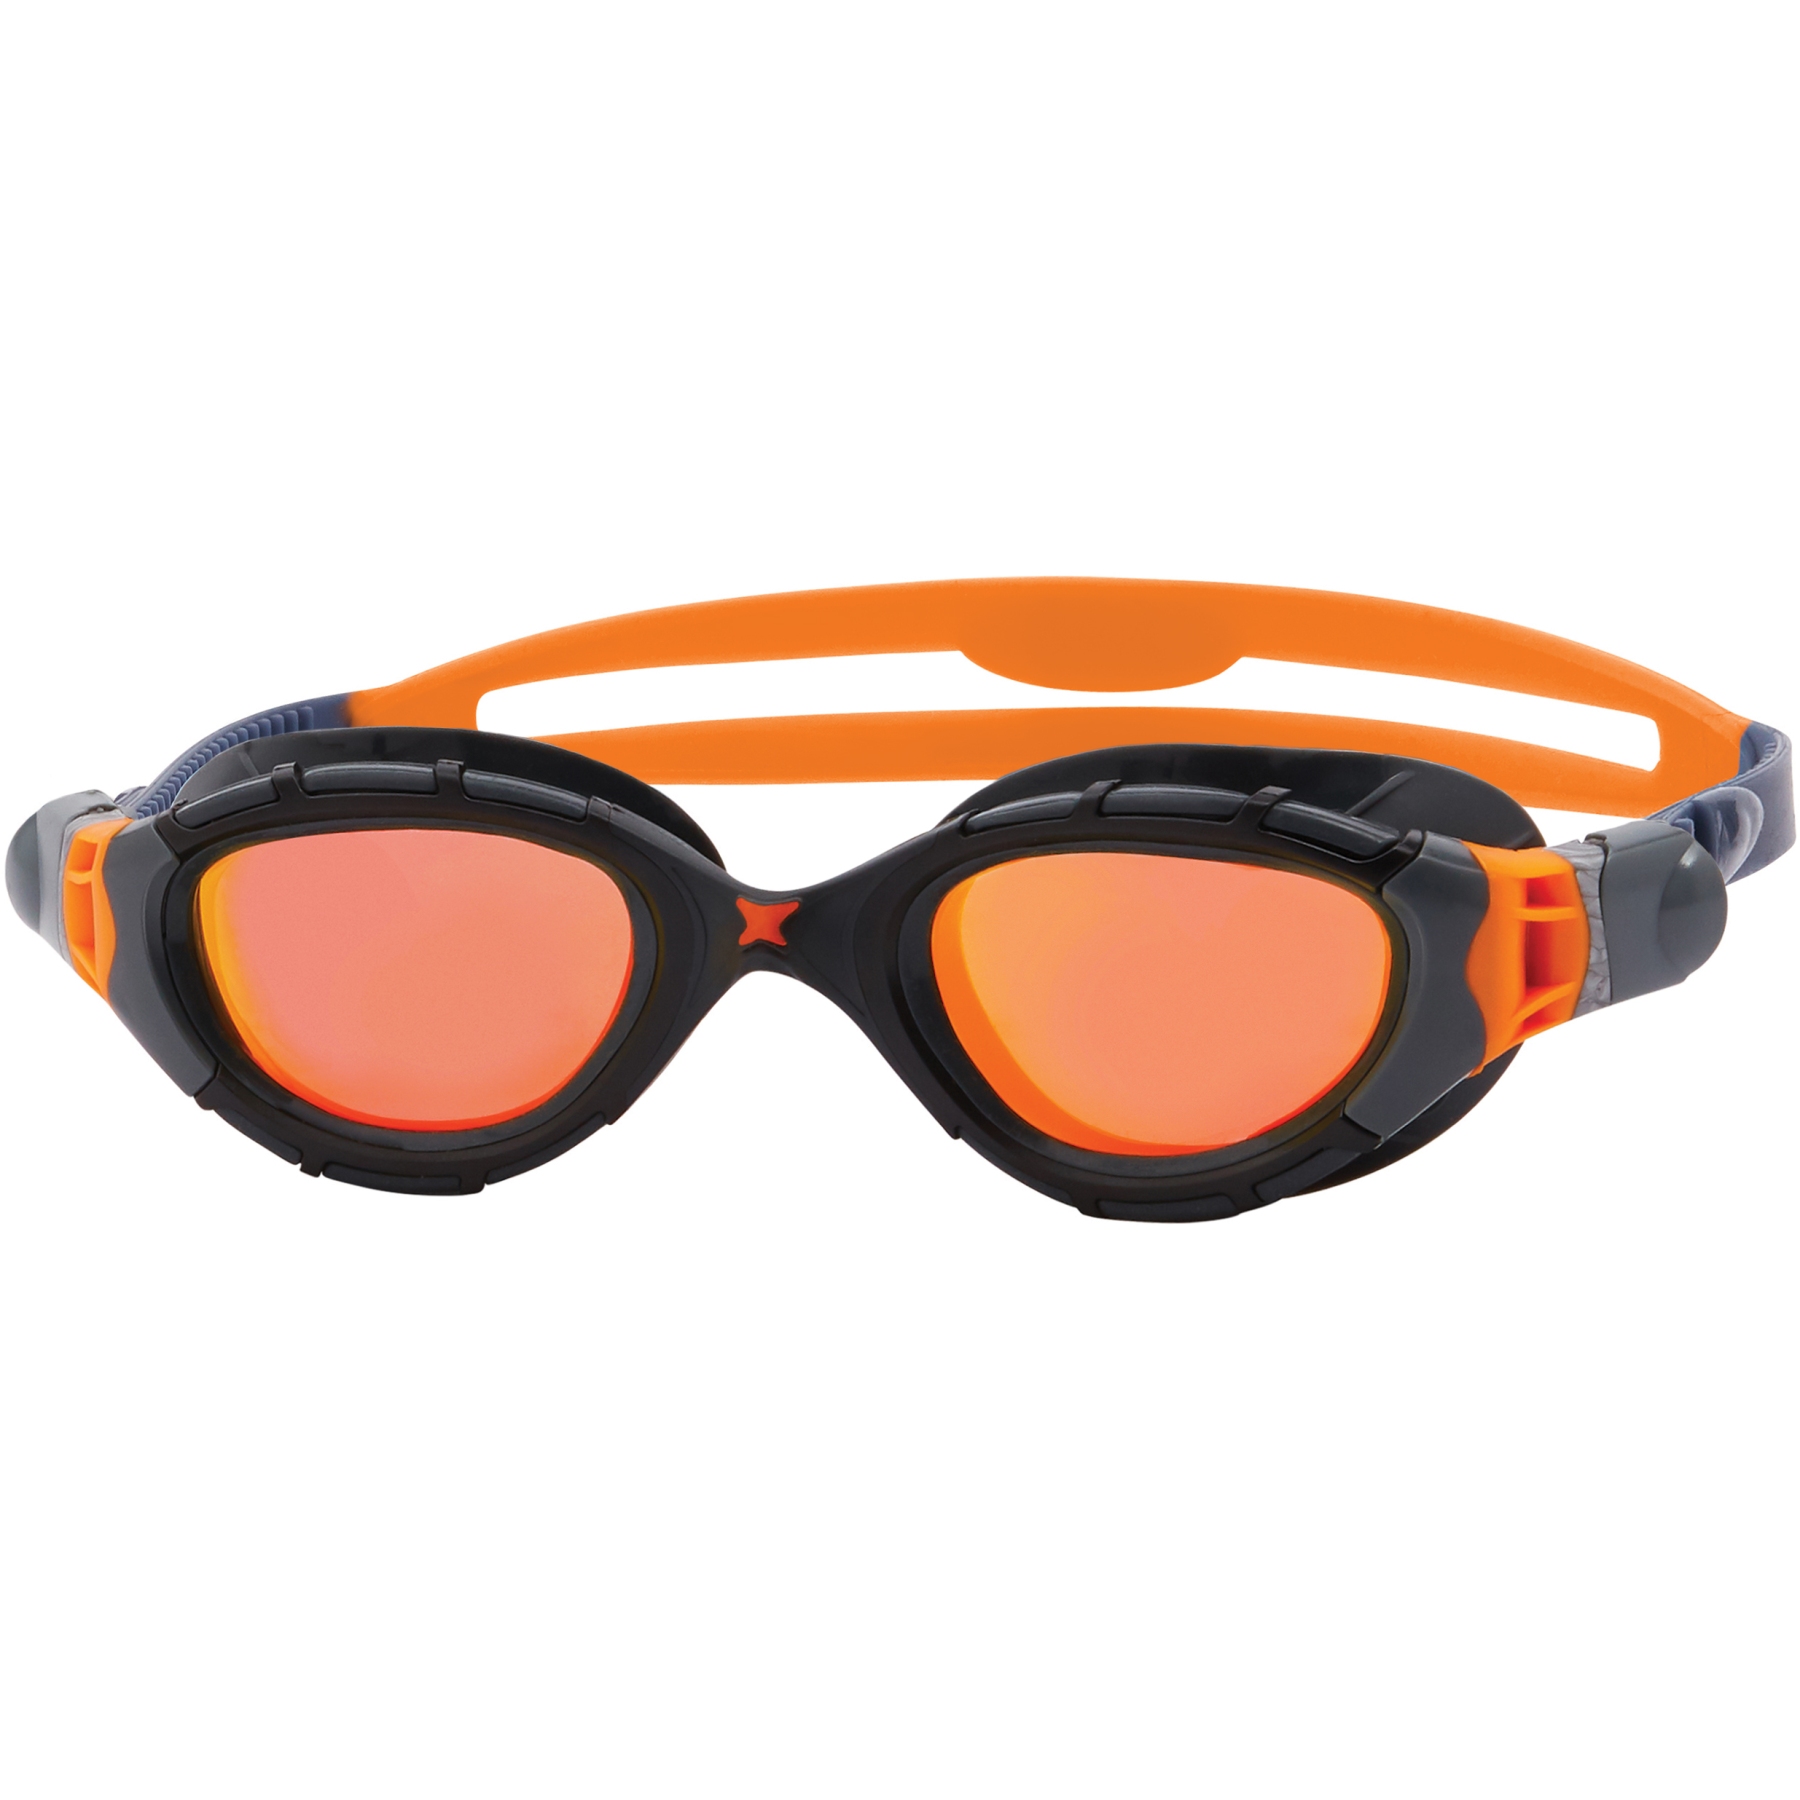 Productfoto van Zoggs Predator Flex Titanium Zwembril - Mirror Orange Lenses - Regular Fit - Grey/Black